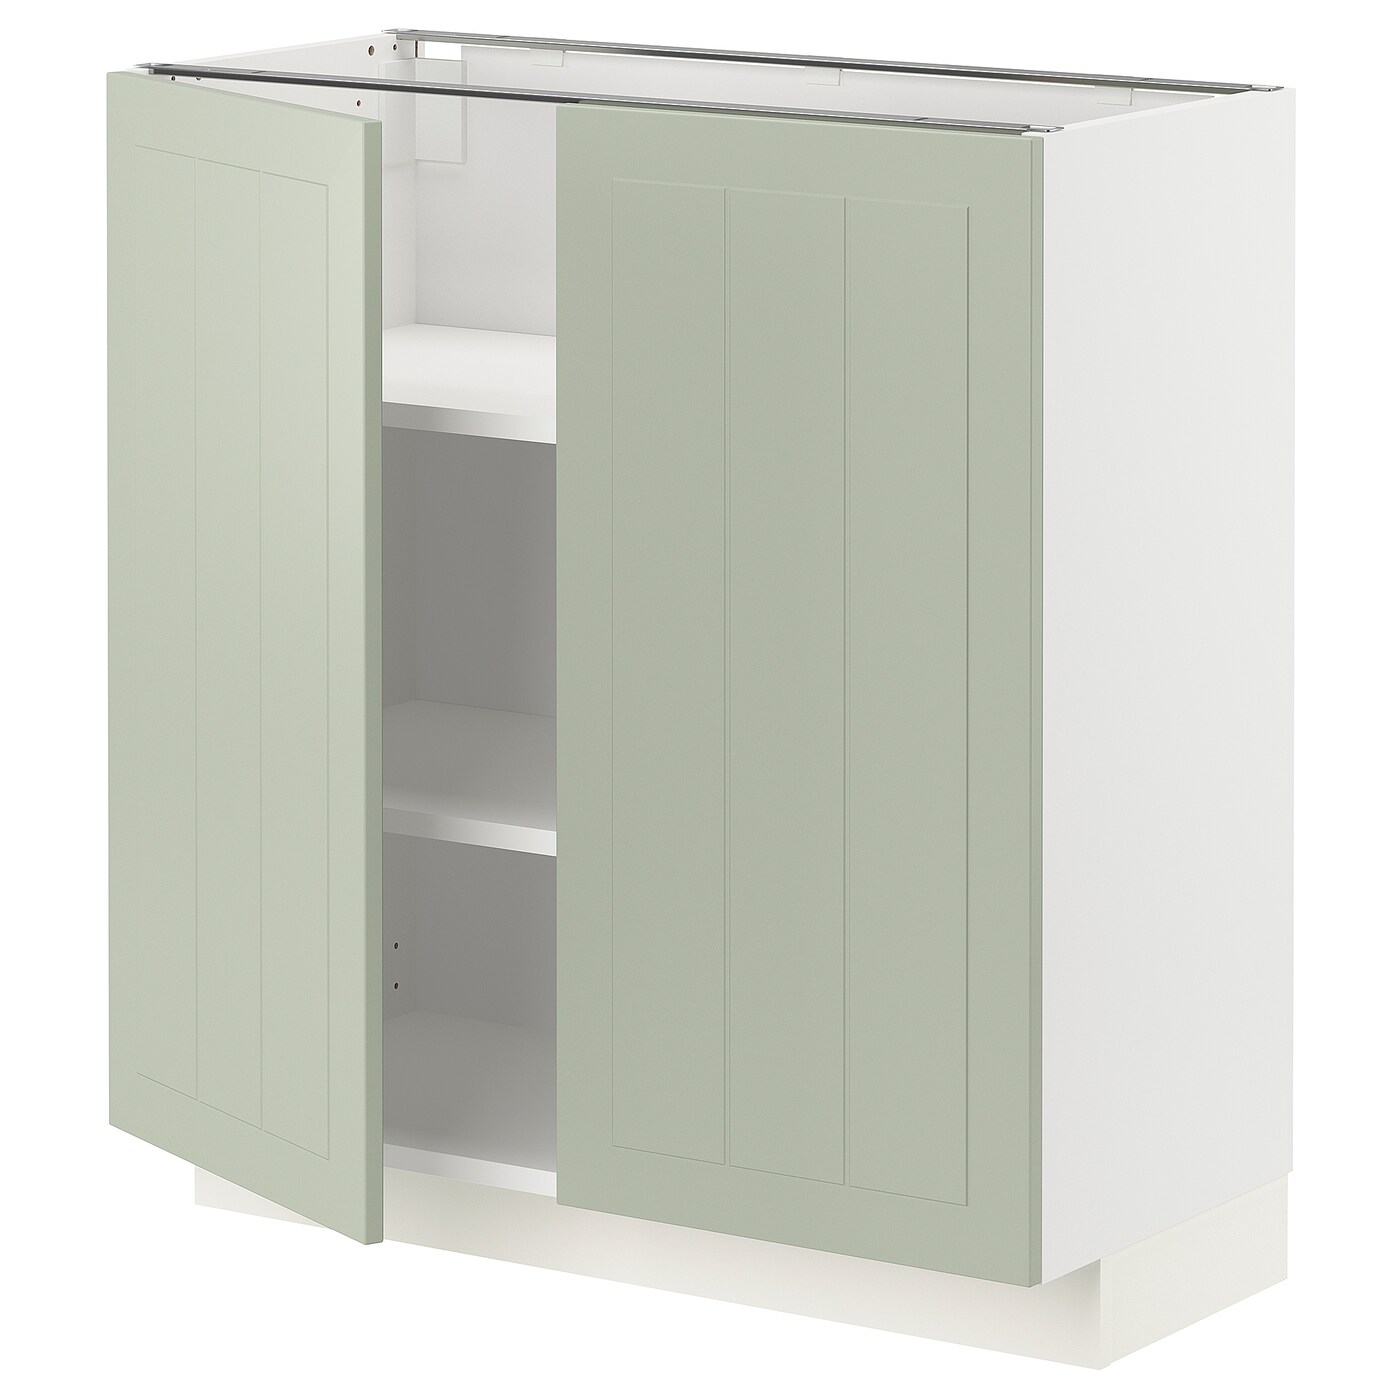 Напольный шкаф - IKEA METOD, 88x39,5x80см, белый/светло-зеленый, МЕТОД ИКЕА